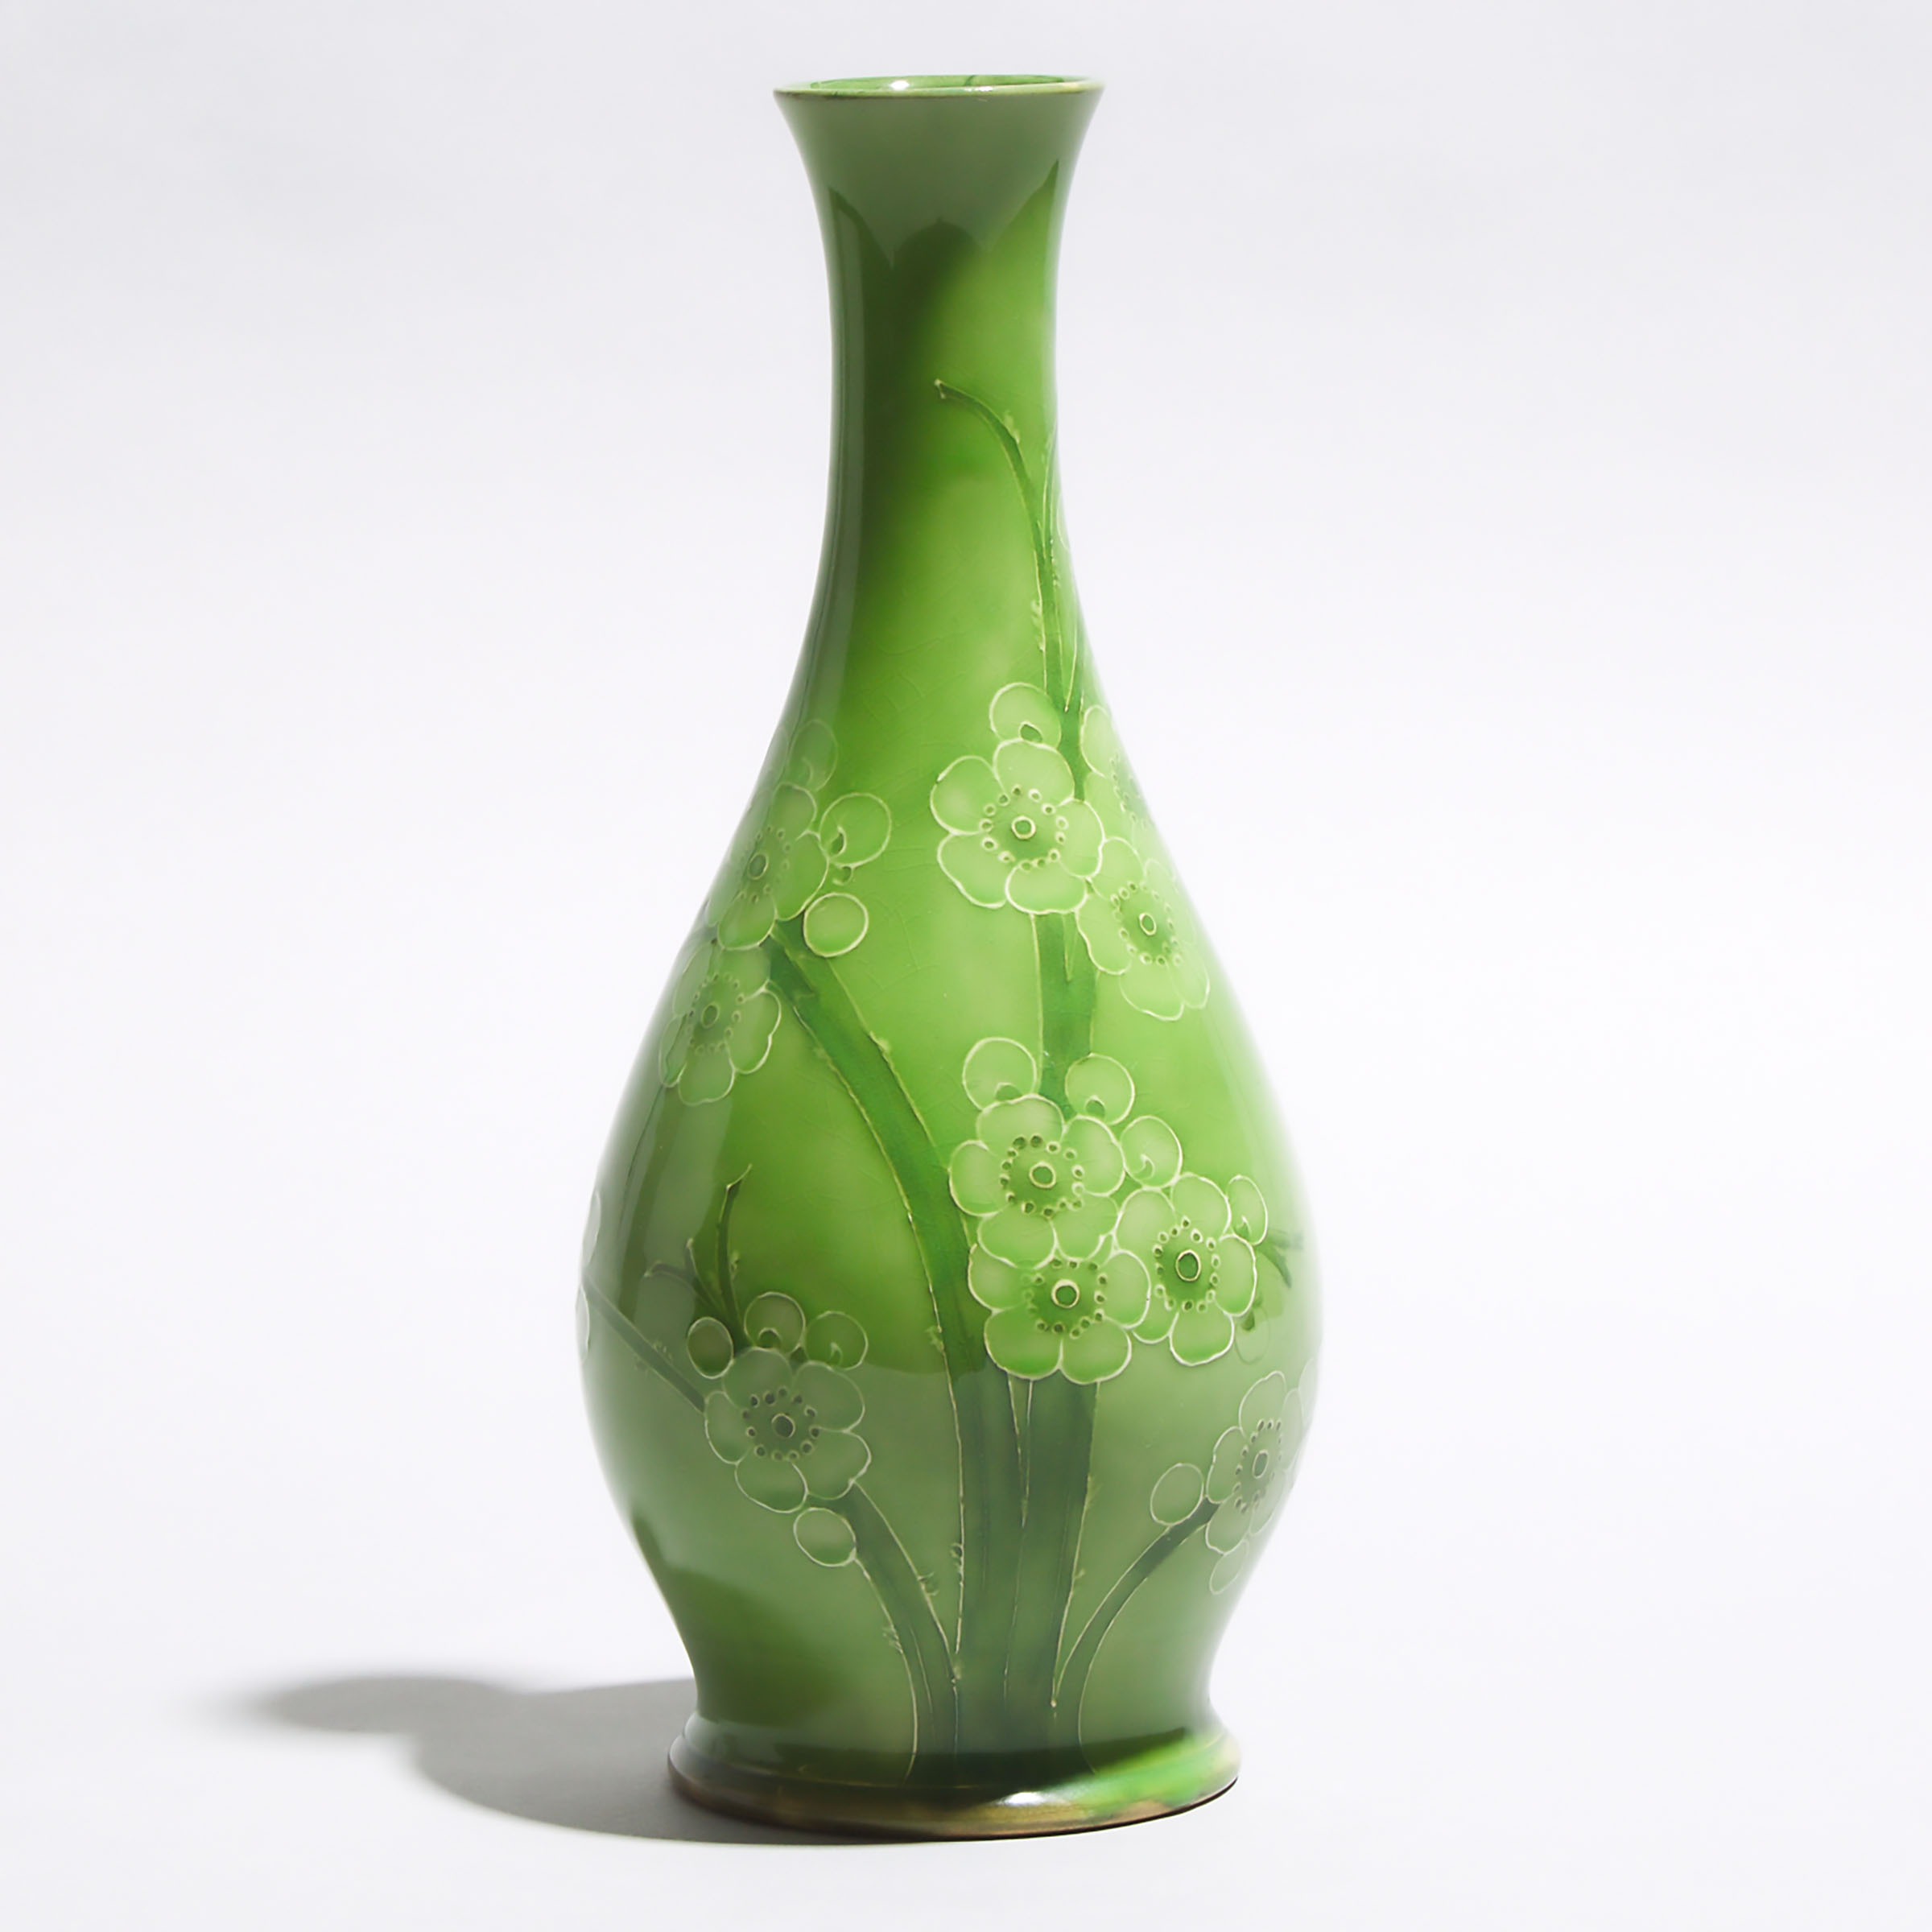 Macintyre Moorcroft Green Prunus Vase, dated 1912